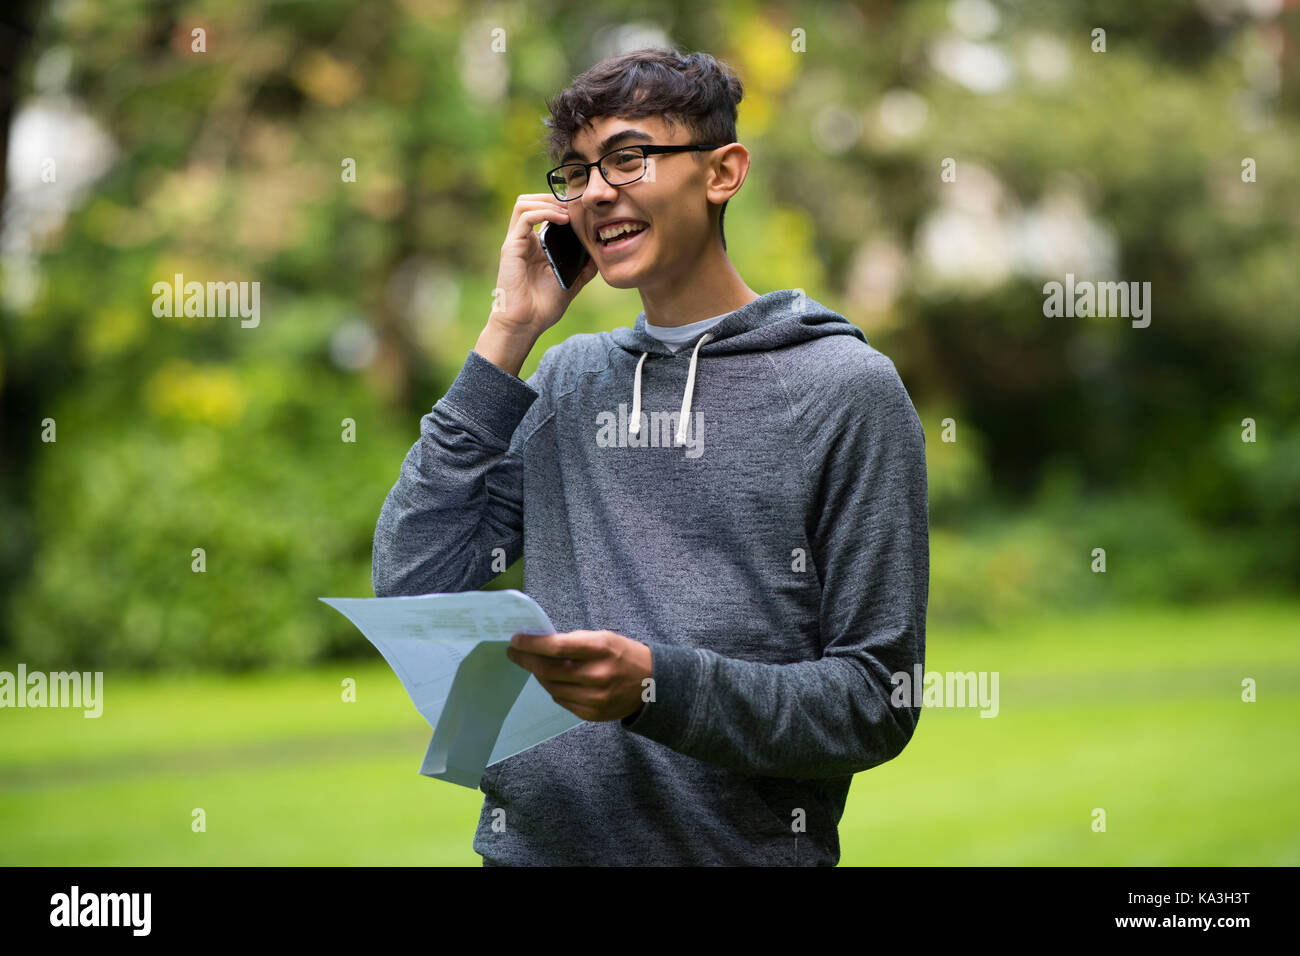 Swansea, Pays de Galles - 17 août : Adam-frangakas williams parle au téléphone après avoir reçu ses résultats à un niveau de l'école maison ffynone le 17 août 201 Banque D'Images